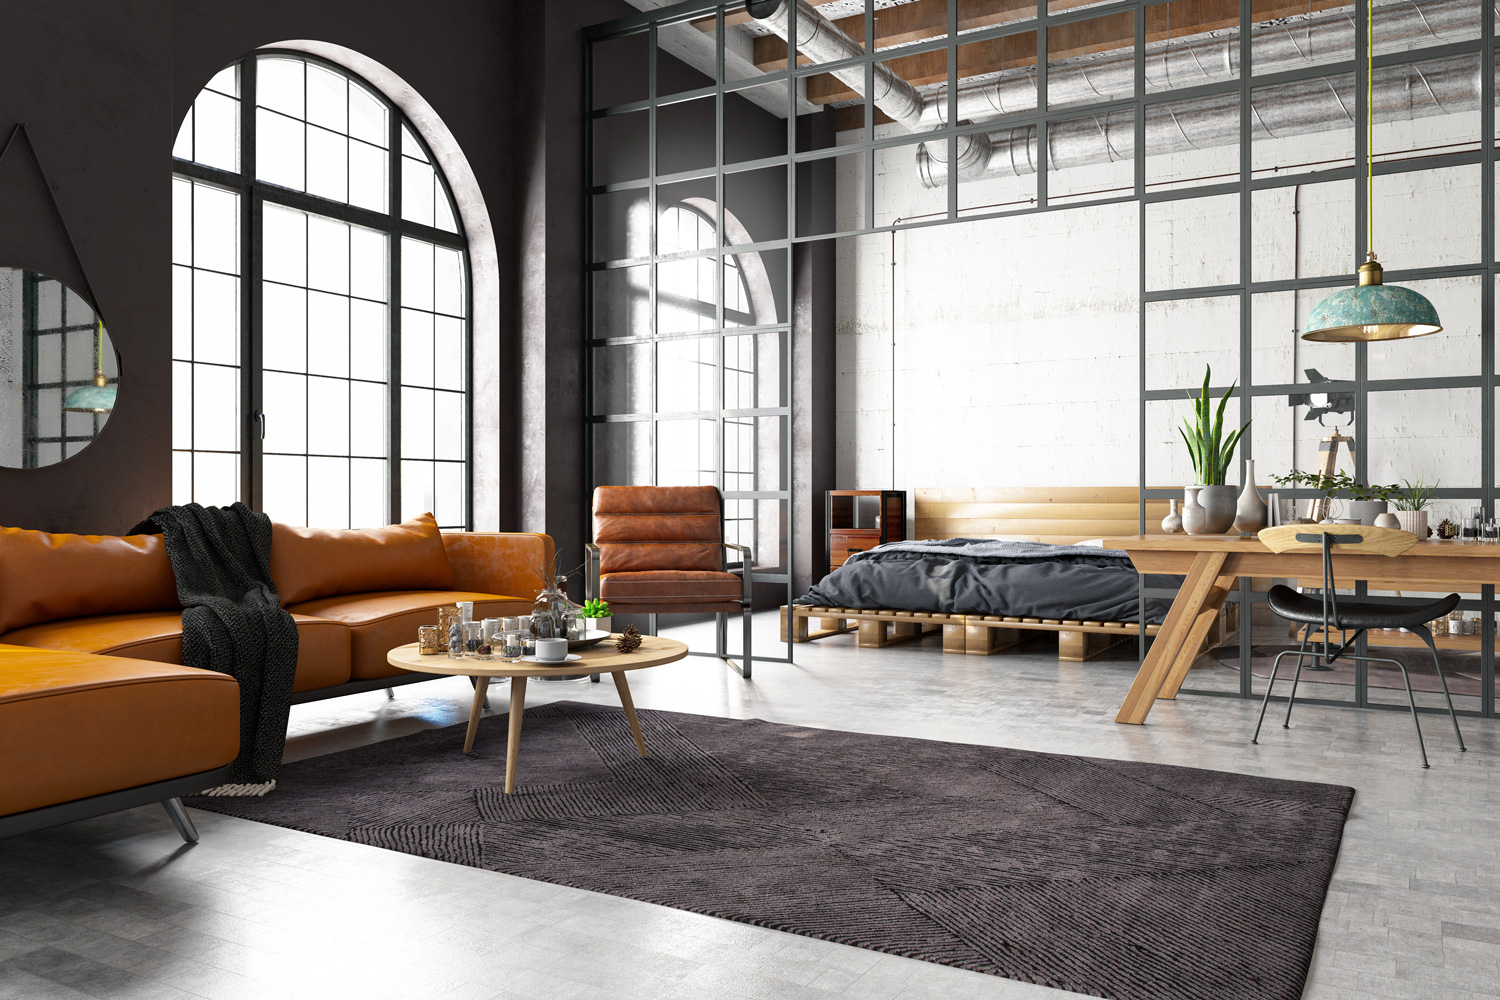 Industrial Style Loft Bedroom wiht Living Room.